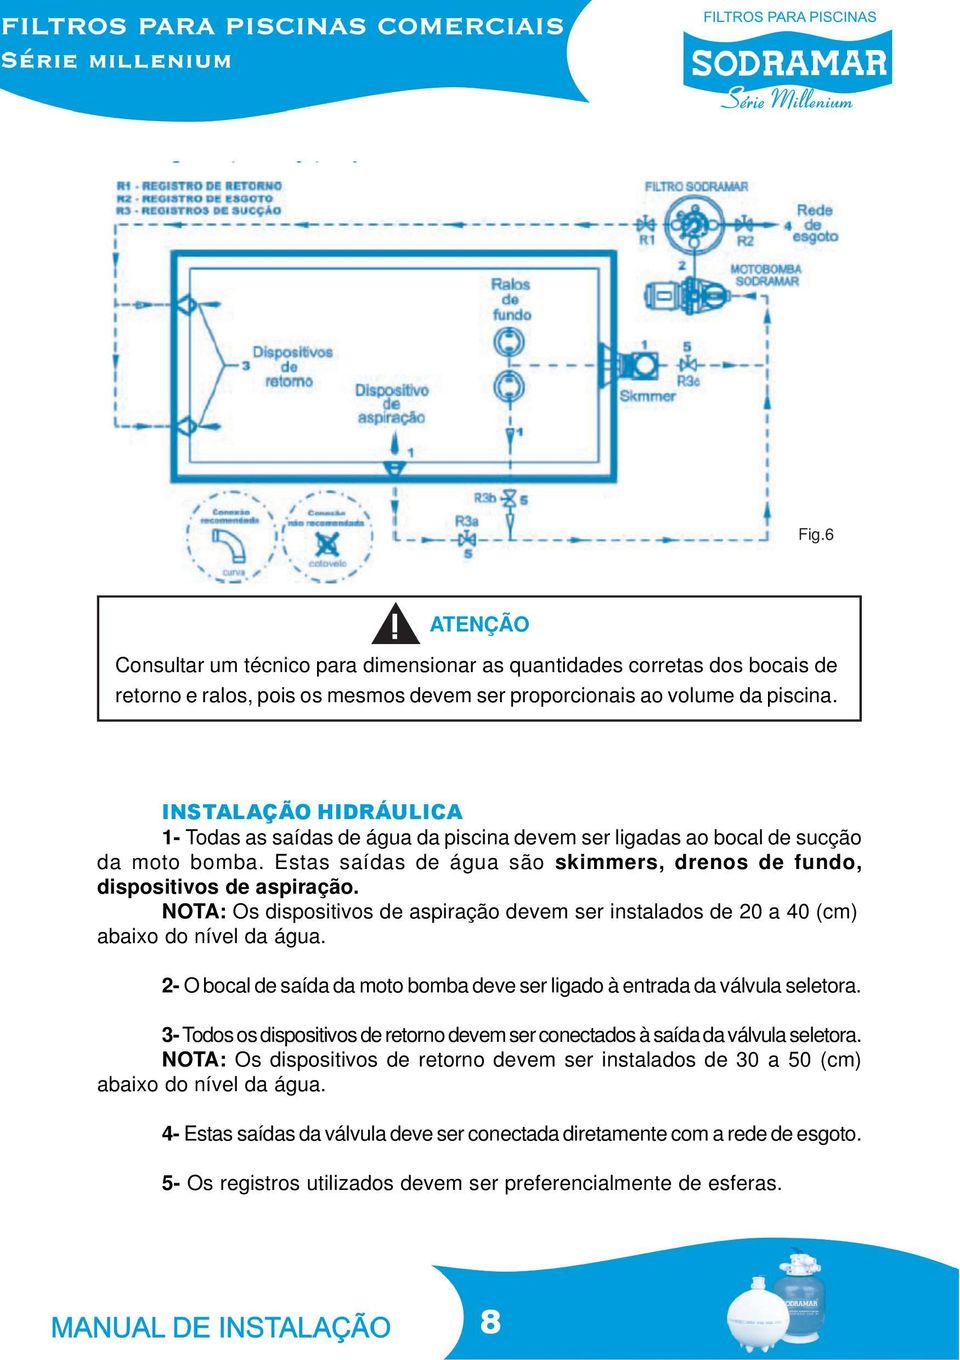 NOTA: Os dispositivos de aspiração devem ser instalados de 20 a 40 (cm) abaixo do nível da água. 2- O bocal de saída da moto bomba deve ser ligado à entrada da válvula seletora.